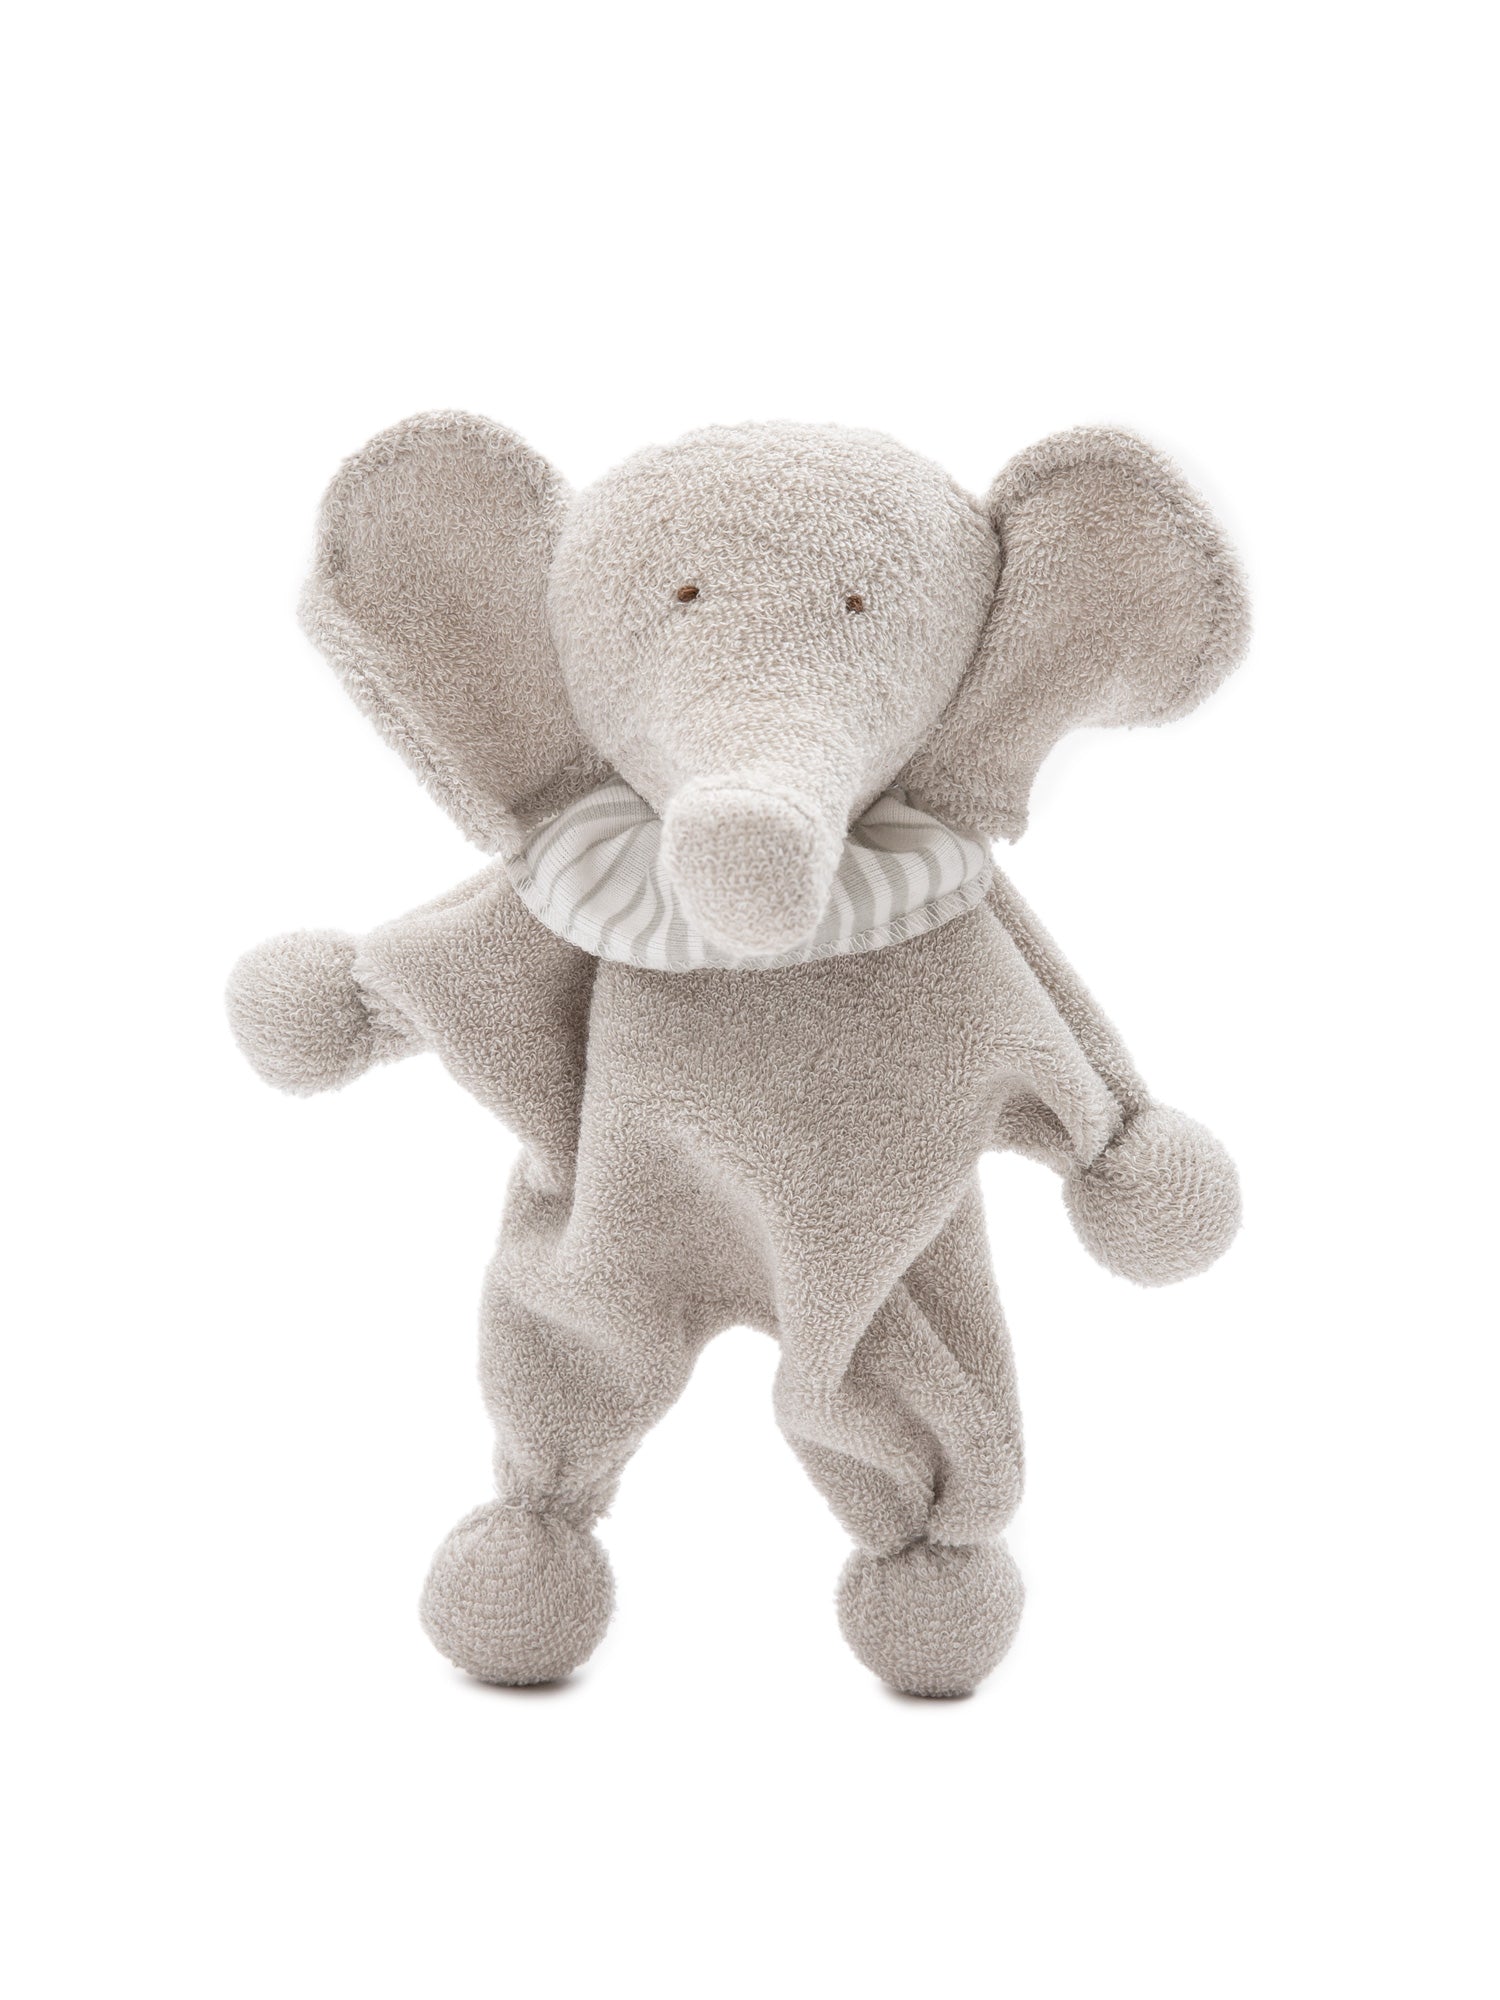 Elephant Underwear -  Denmark